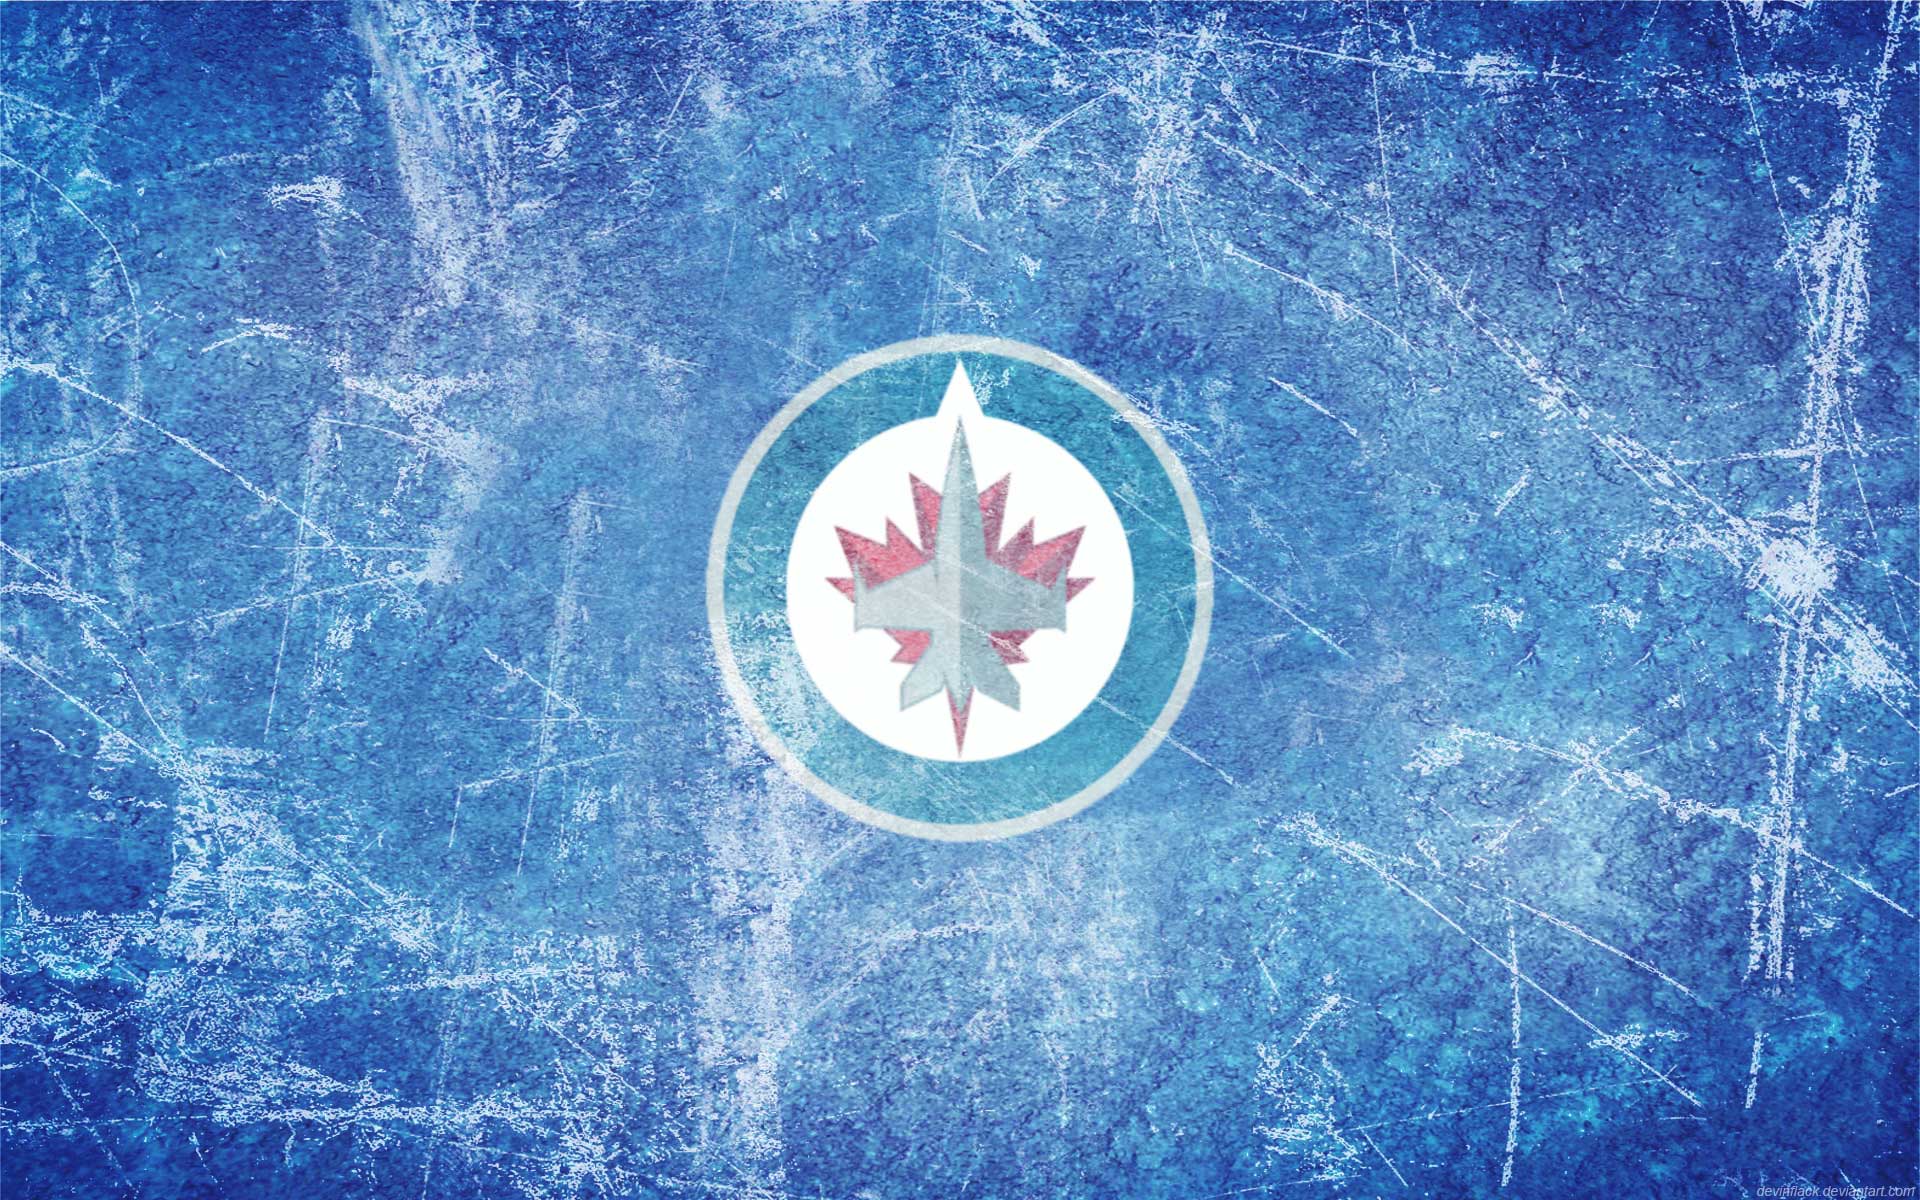 Winnipeg Jets Wallpaper. HD Wallpaper Base